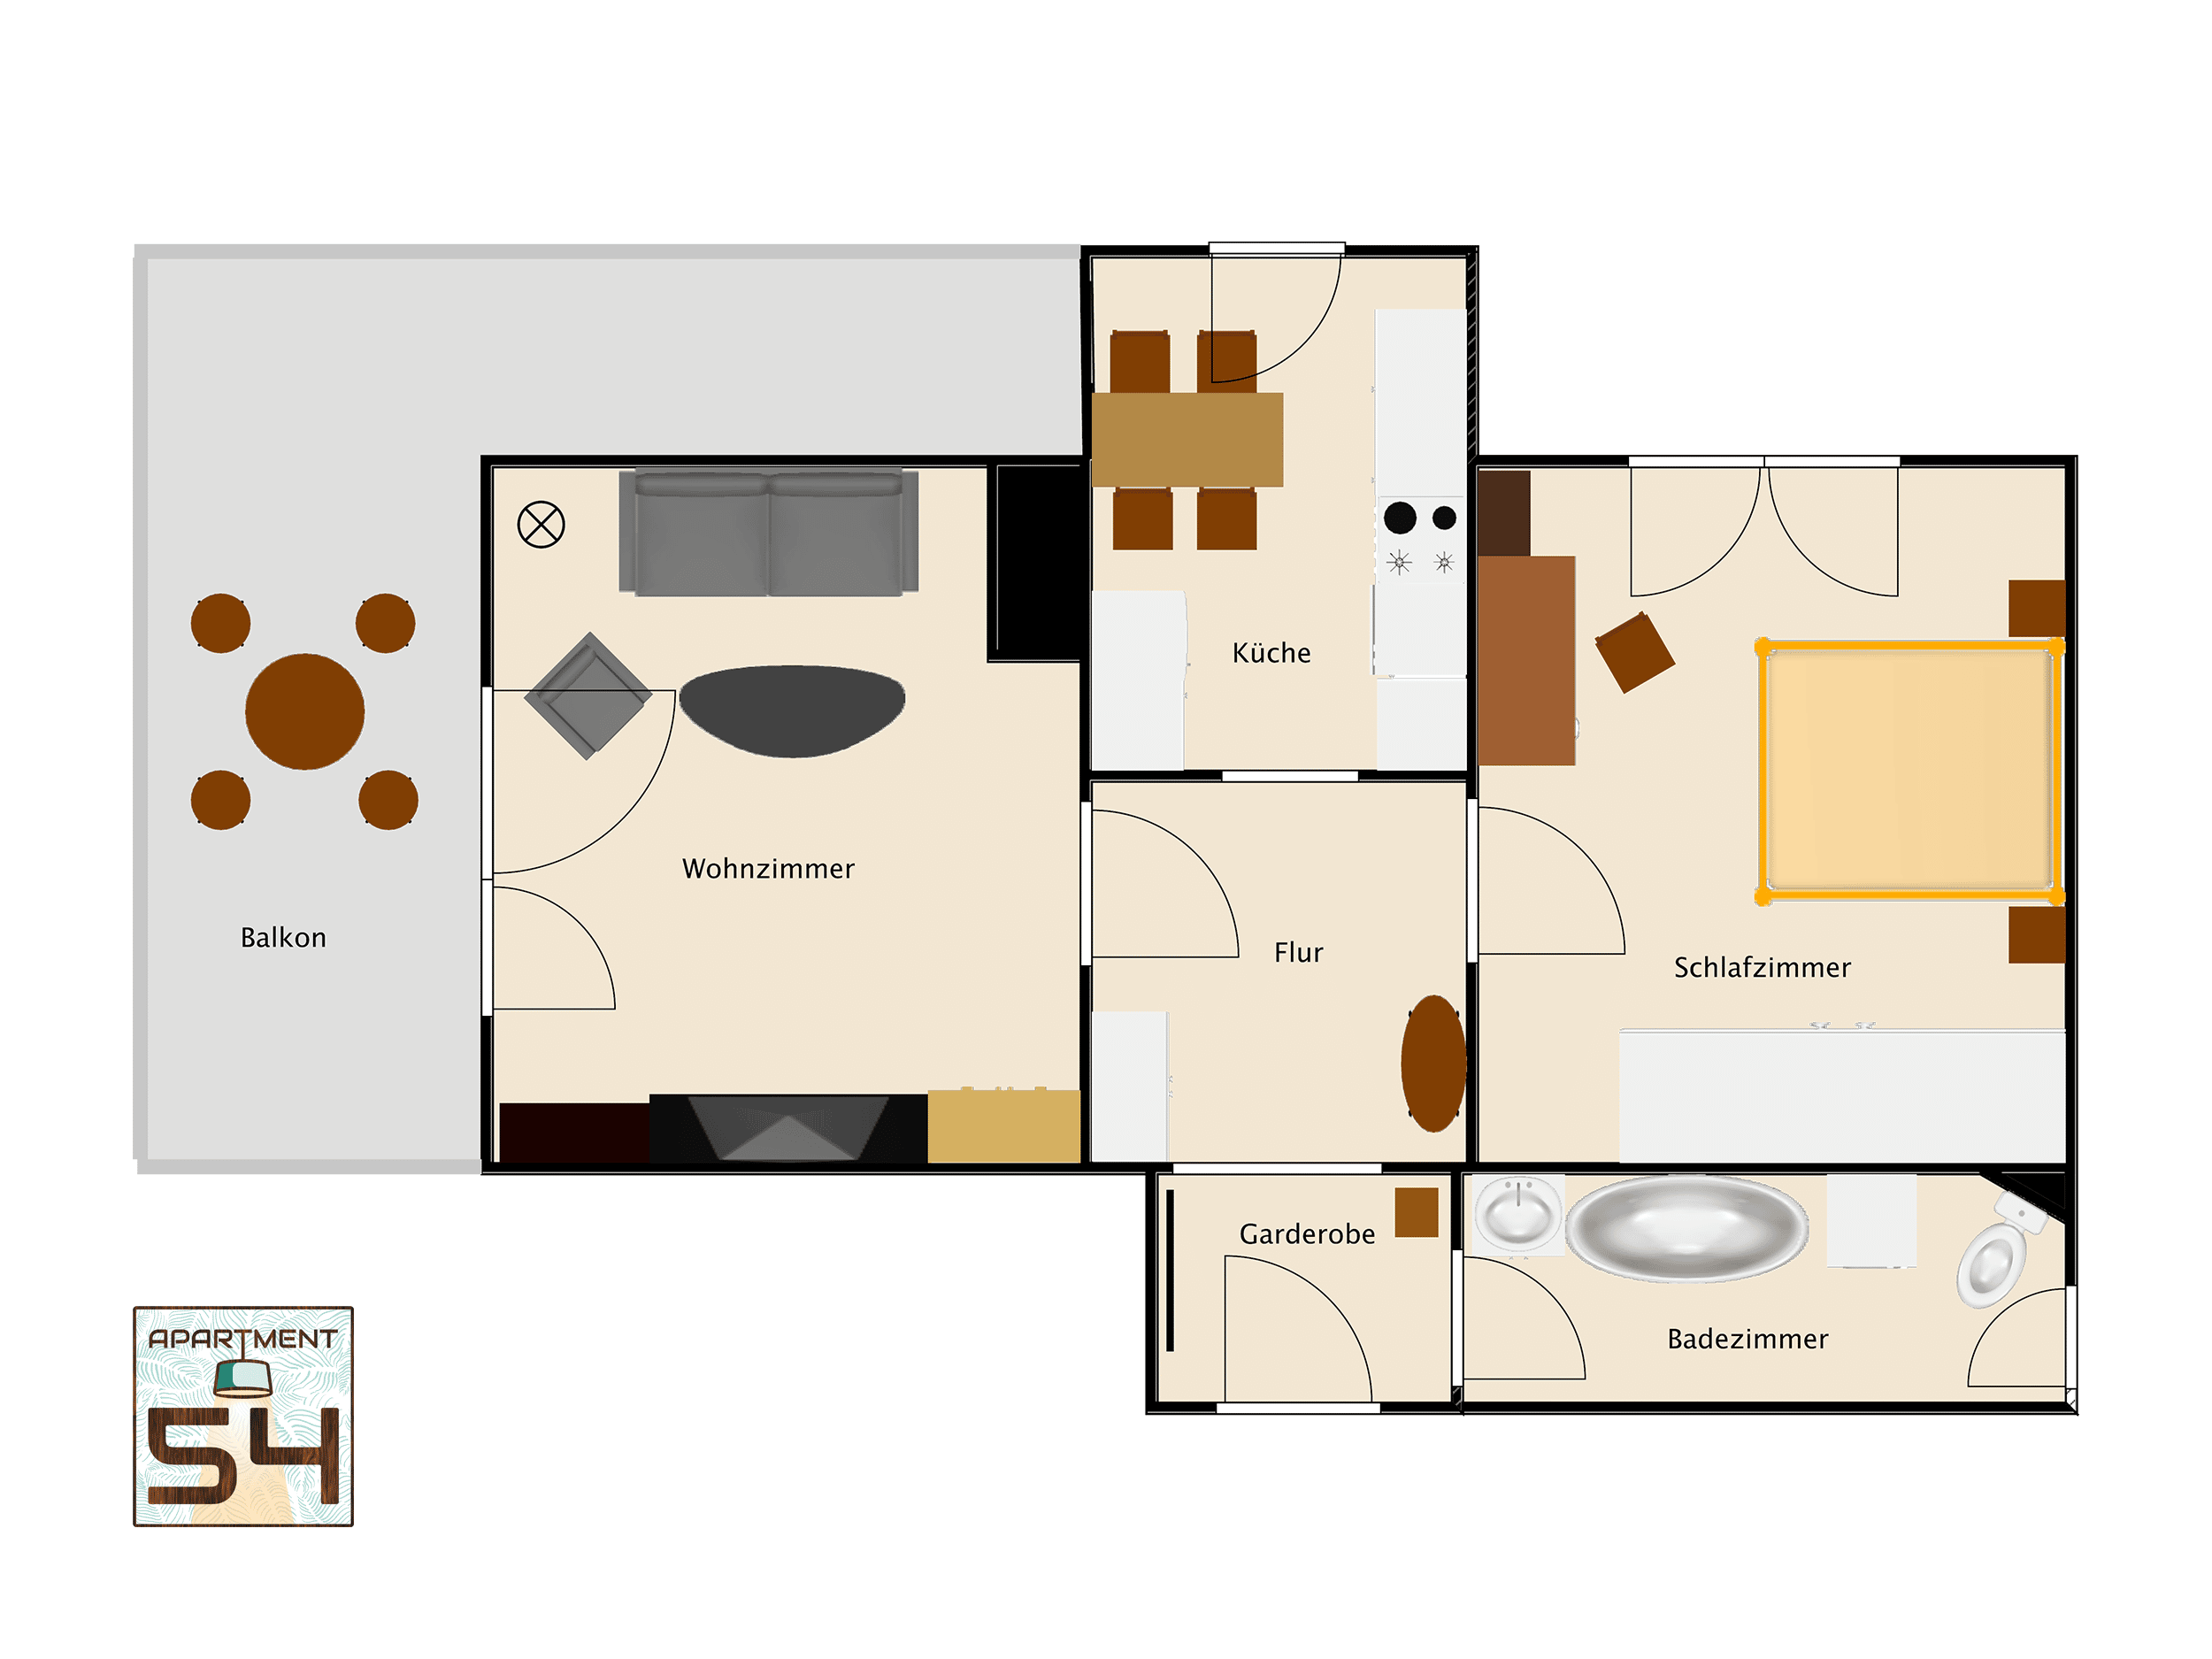 Grundriss der Ferienwohnung Apartment 54